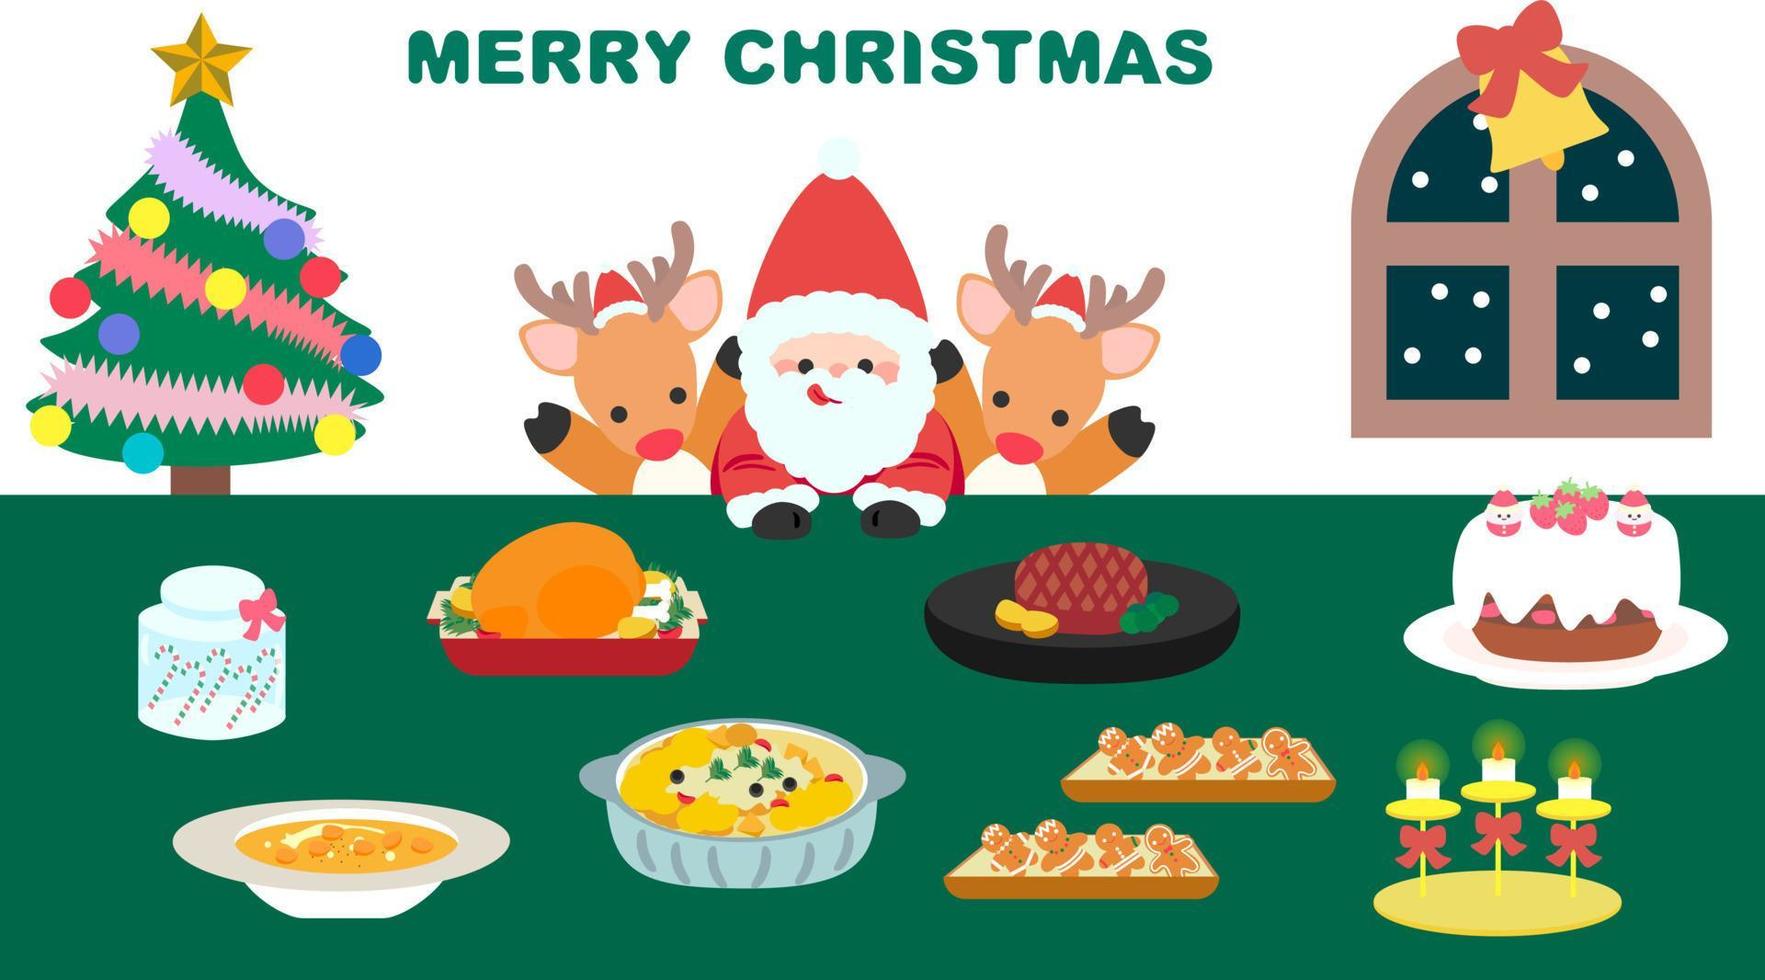 linda ilustración de la cena de navidad. santa claus y renos disfrutan de la cena del festival. diseño plano, vector eps10